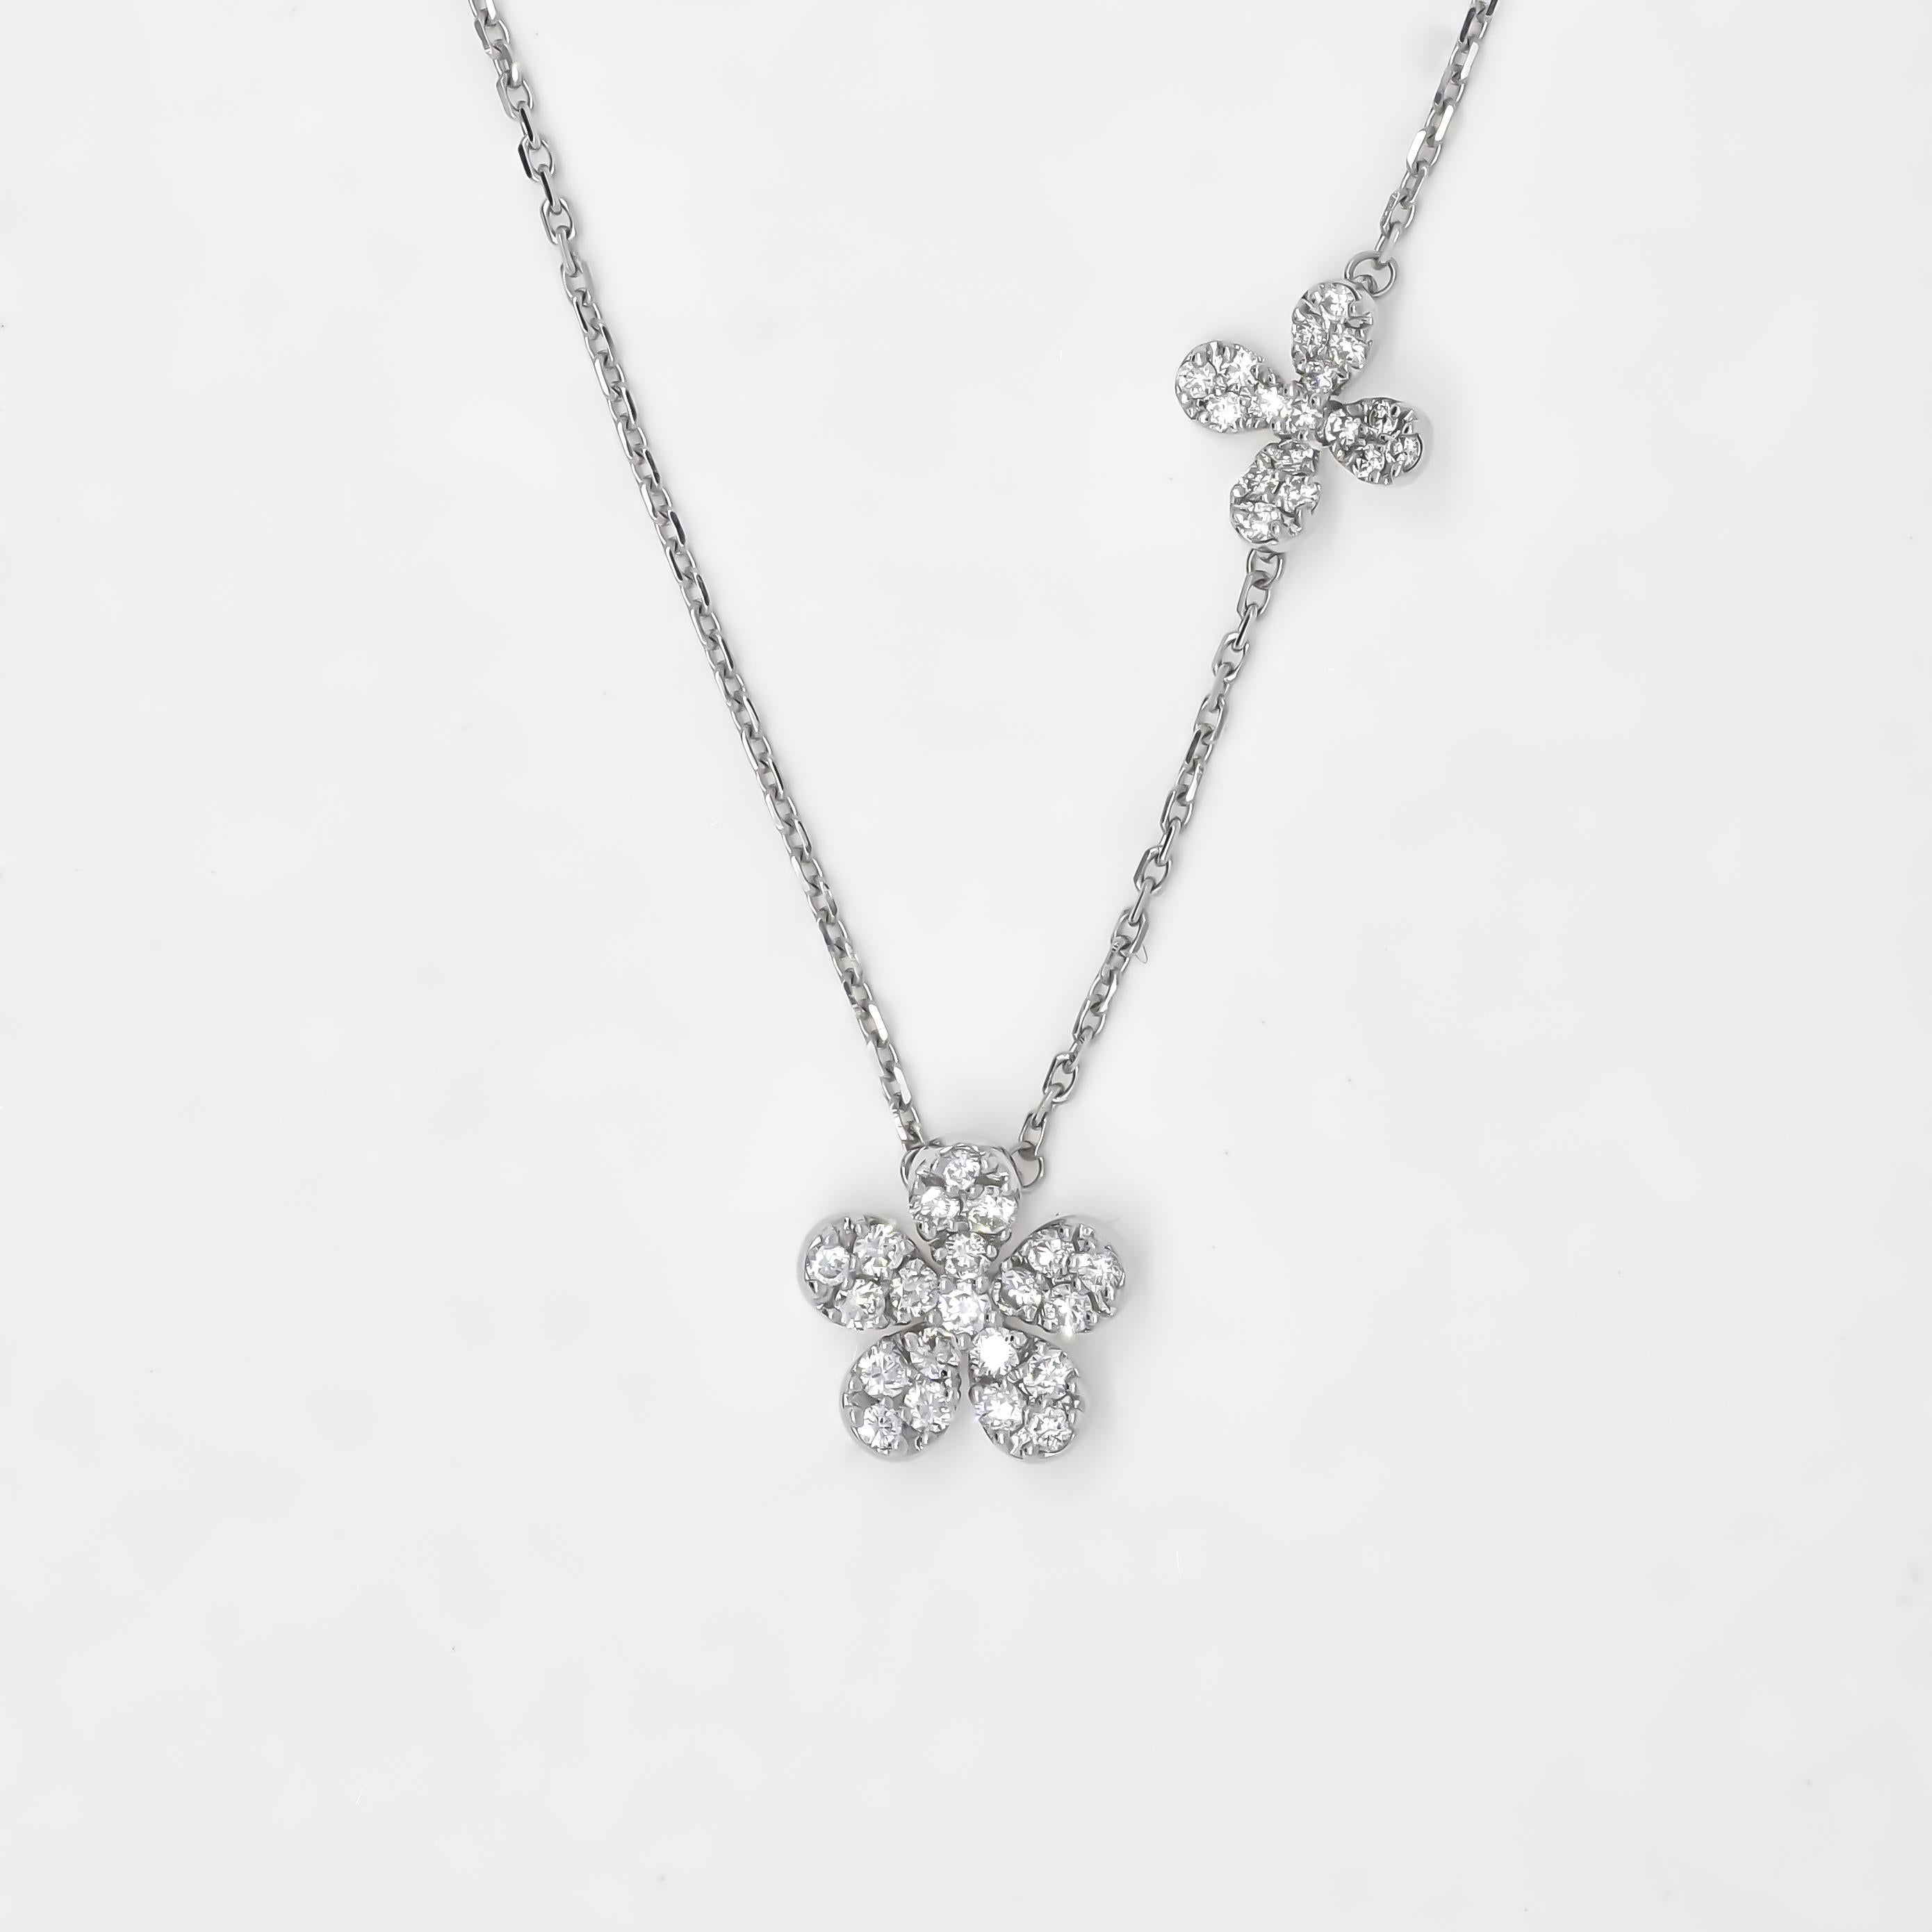 Brilliant Cut Natural Diamond 0.51 carats 18 Karat White Gold Flower Chain Pendant Necklace For Sale